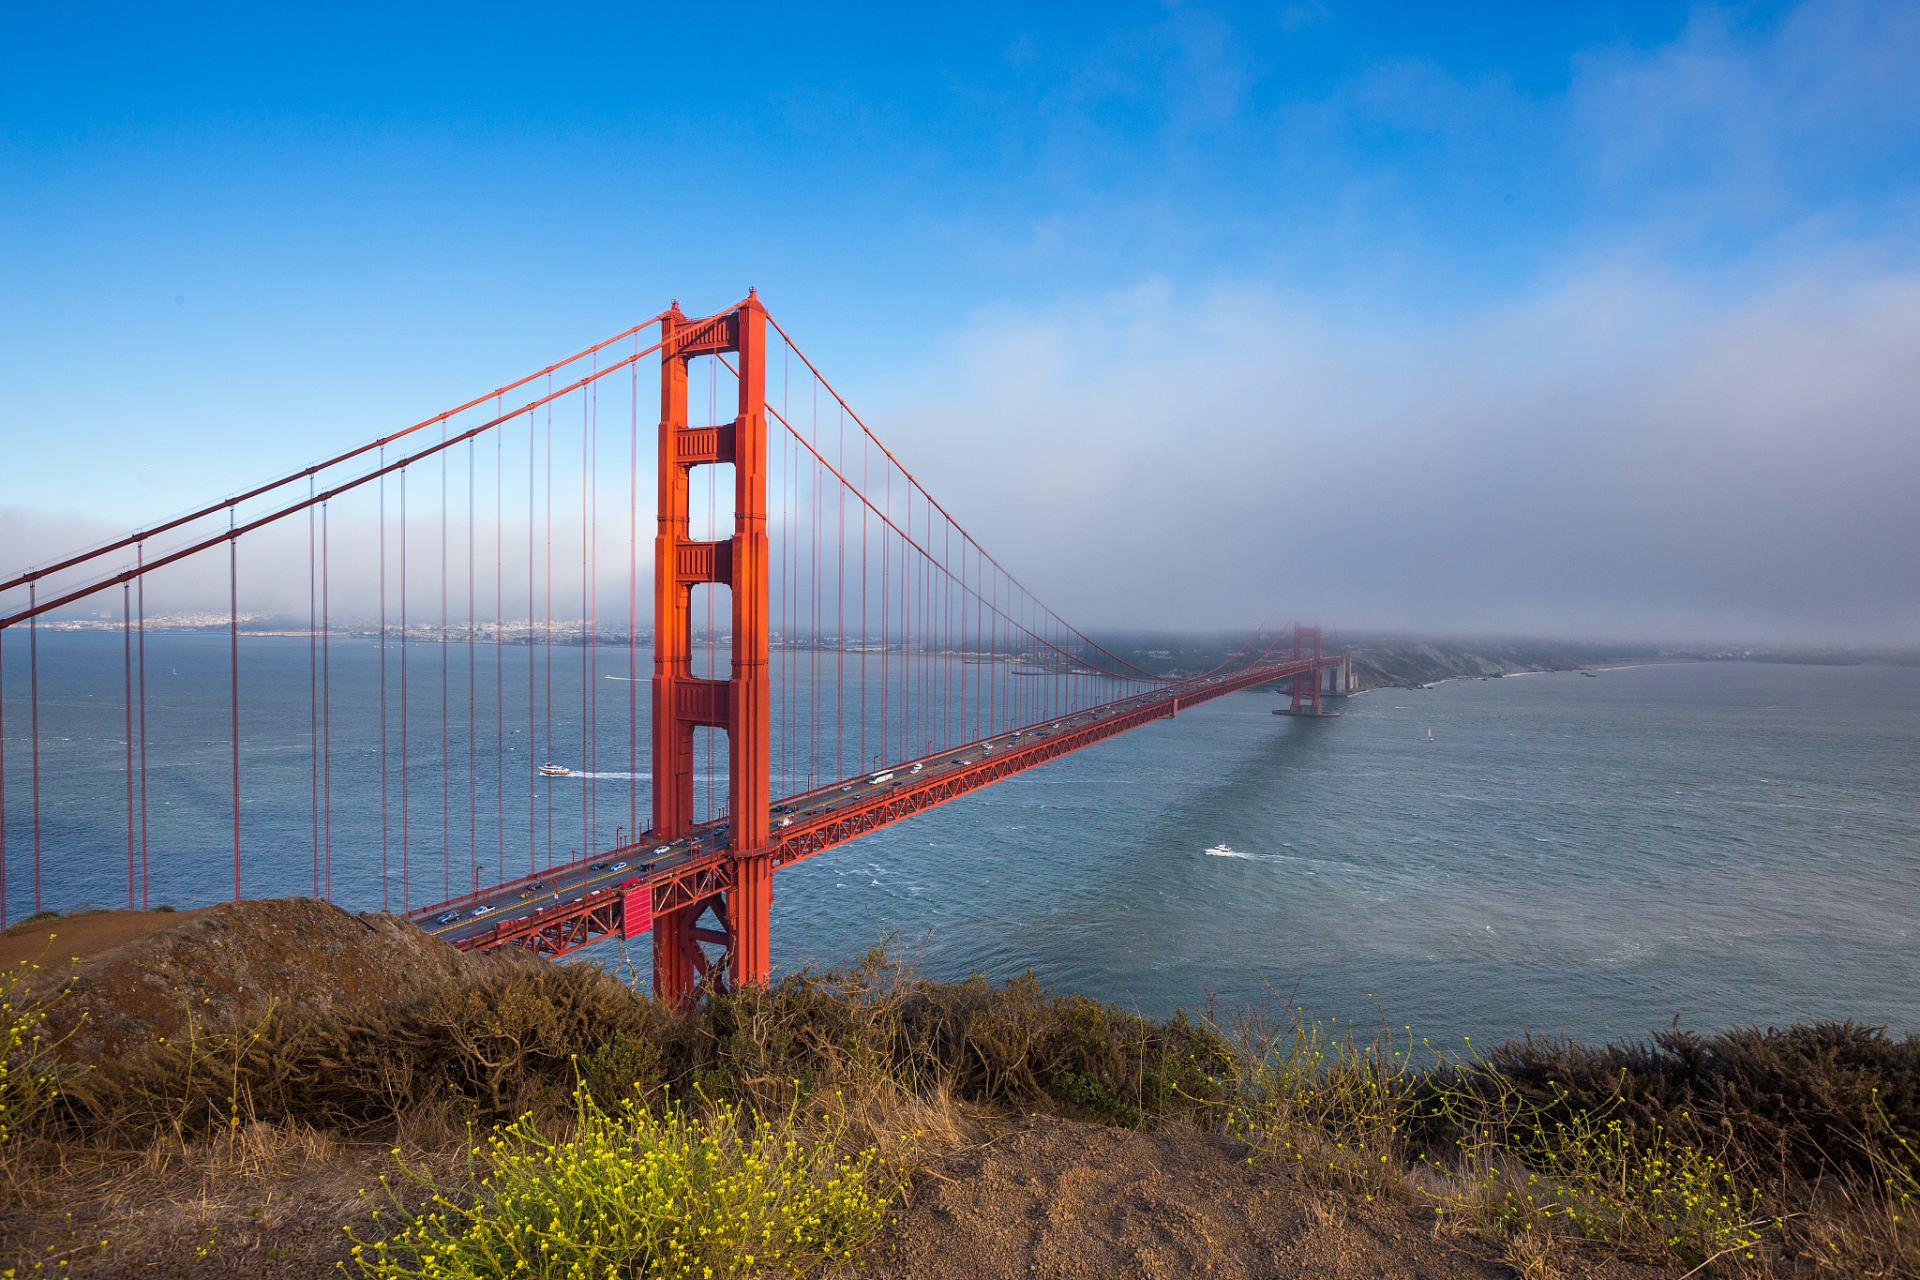 金门大桥  又称金门海峡大桥,是美国境内连接旧金山市区和北部的